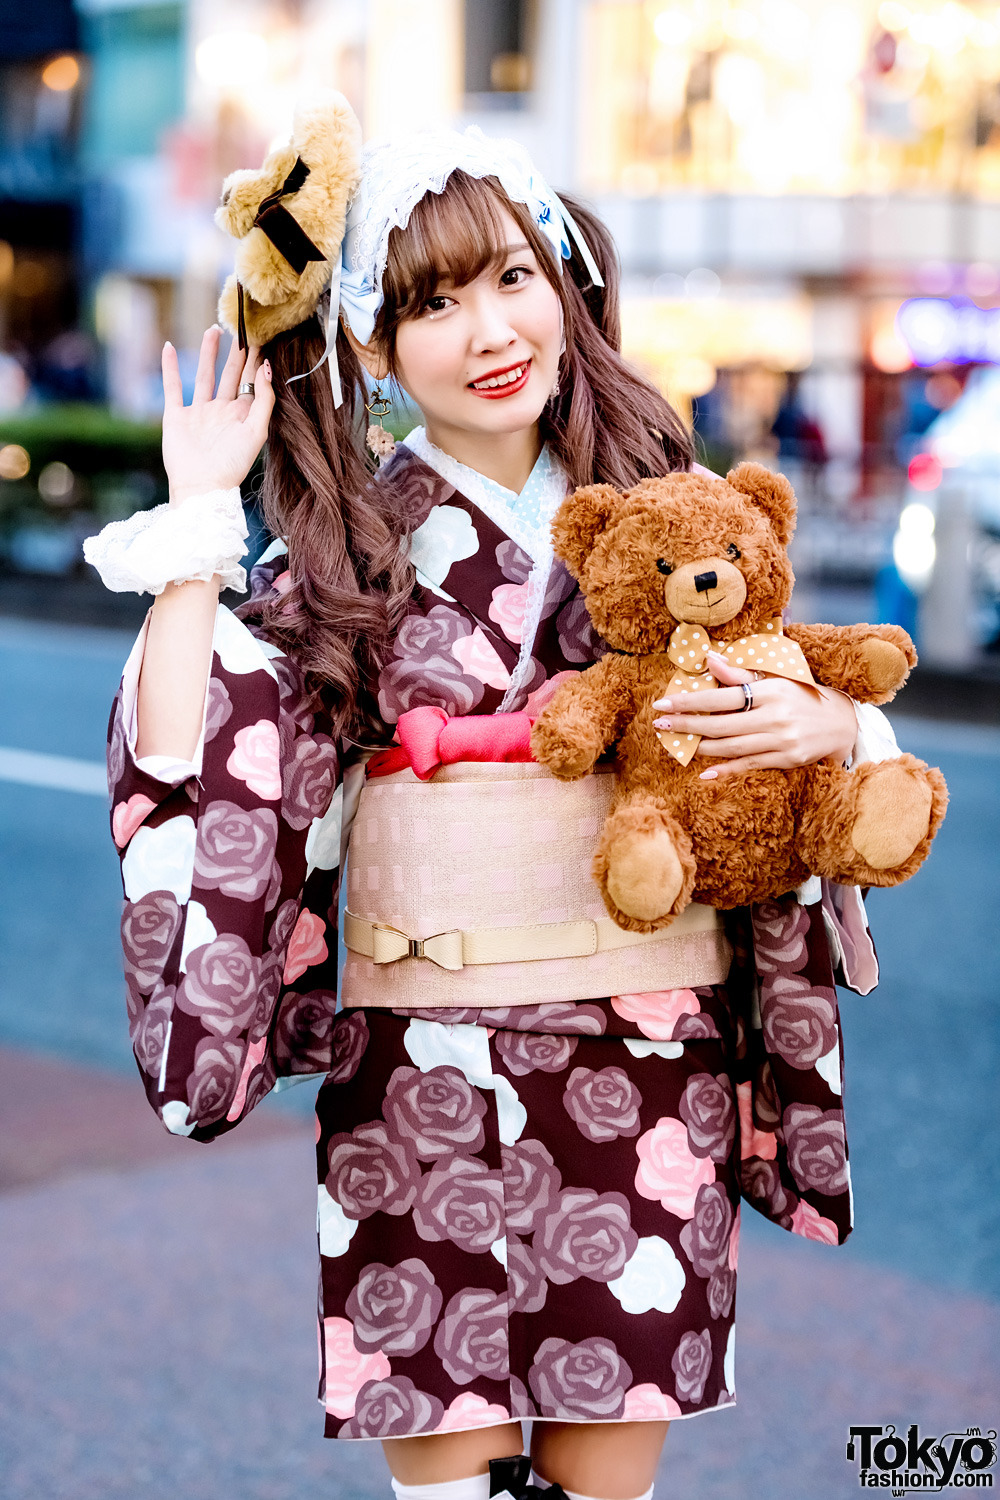 tokyo-fashion:  Sakibon and Ayane on the street in Harajuku. Sakibon is wearing a